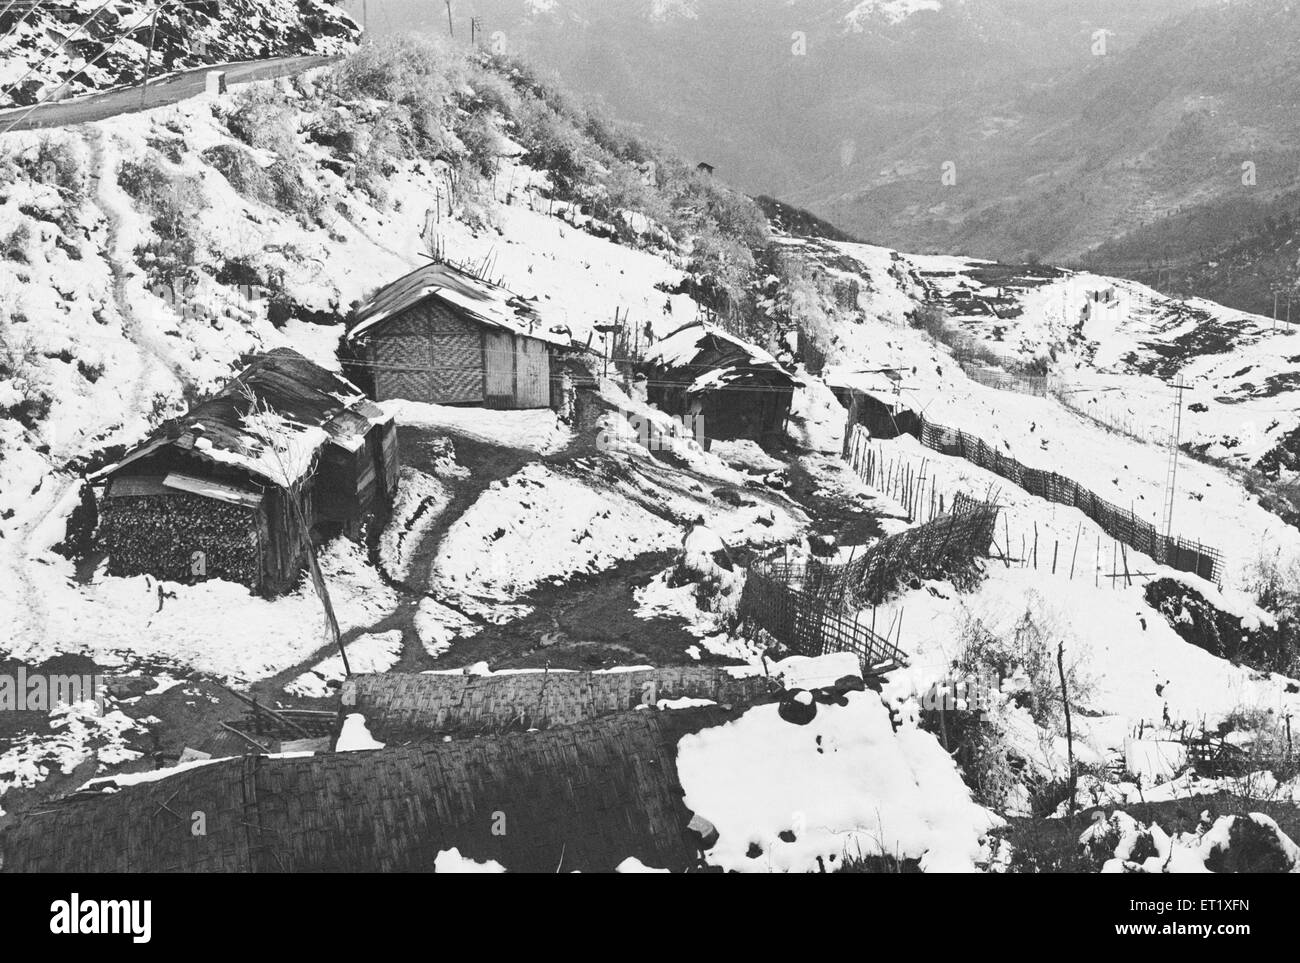 Inverno ; case di villaggio innevate ; Arunachal Pradesh ; India ; Asia ; immagine del 1900 d'epoca Foto Stock